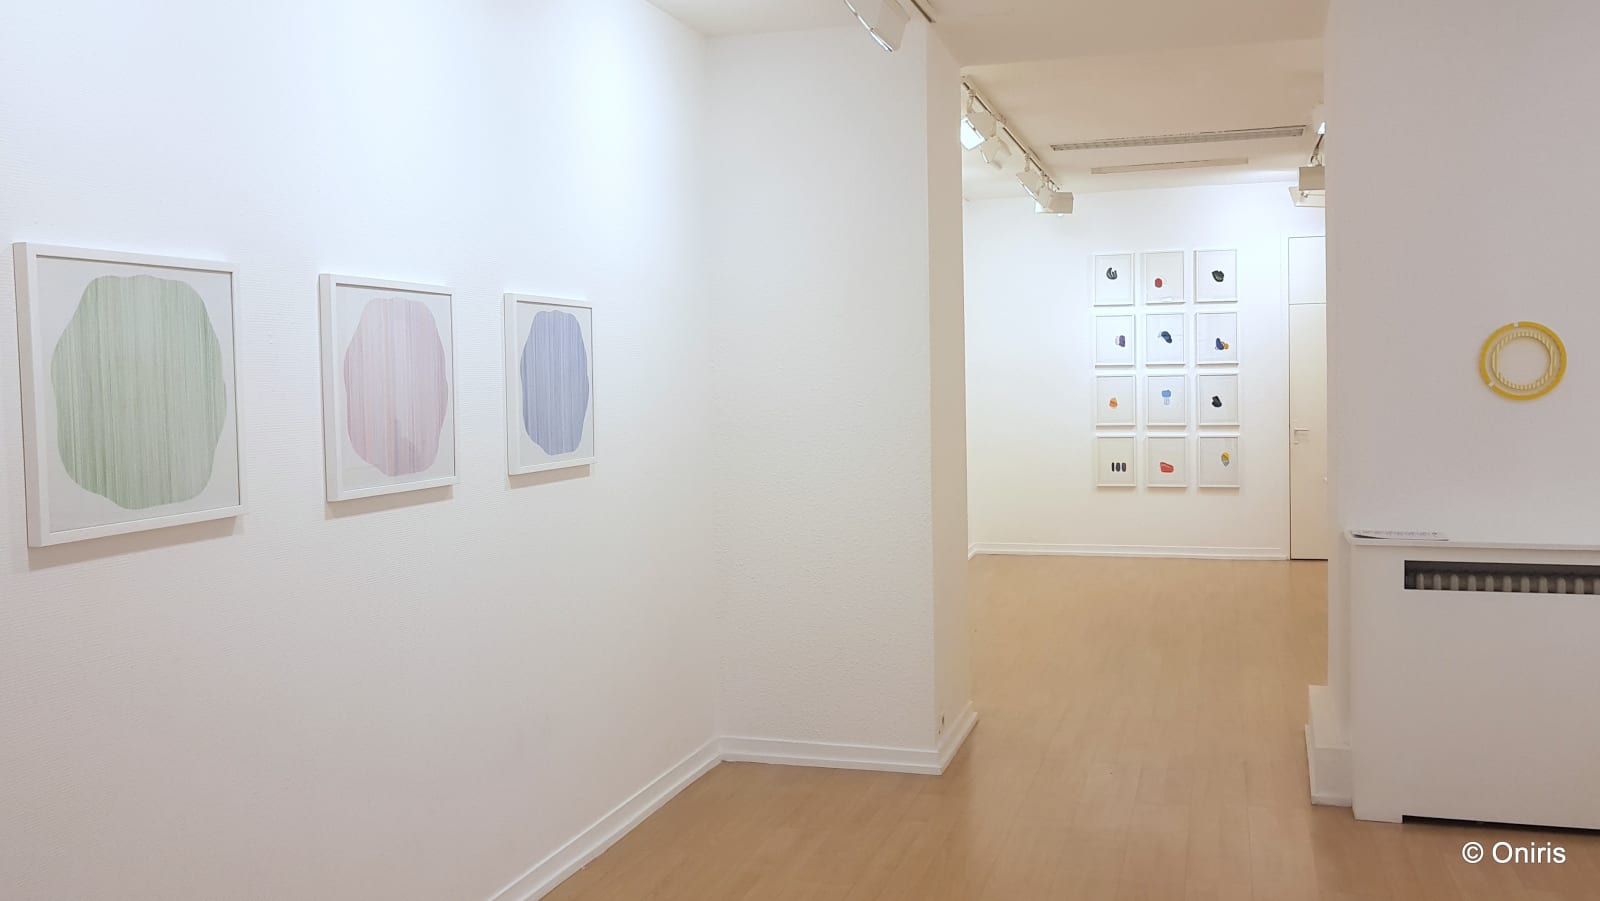 Petits Formats & Oeuvres sur Papier / exposition de groupe des artistes de la galerie / Oniris 2018-2019